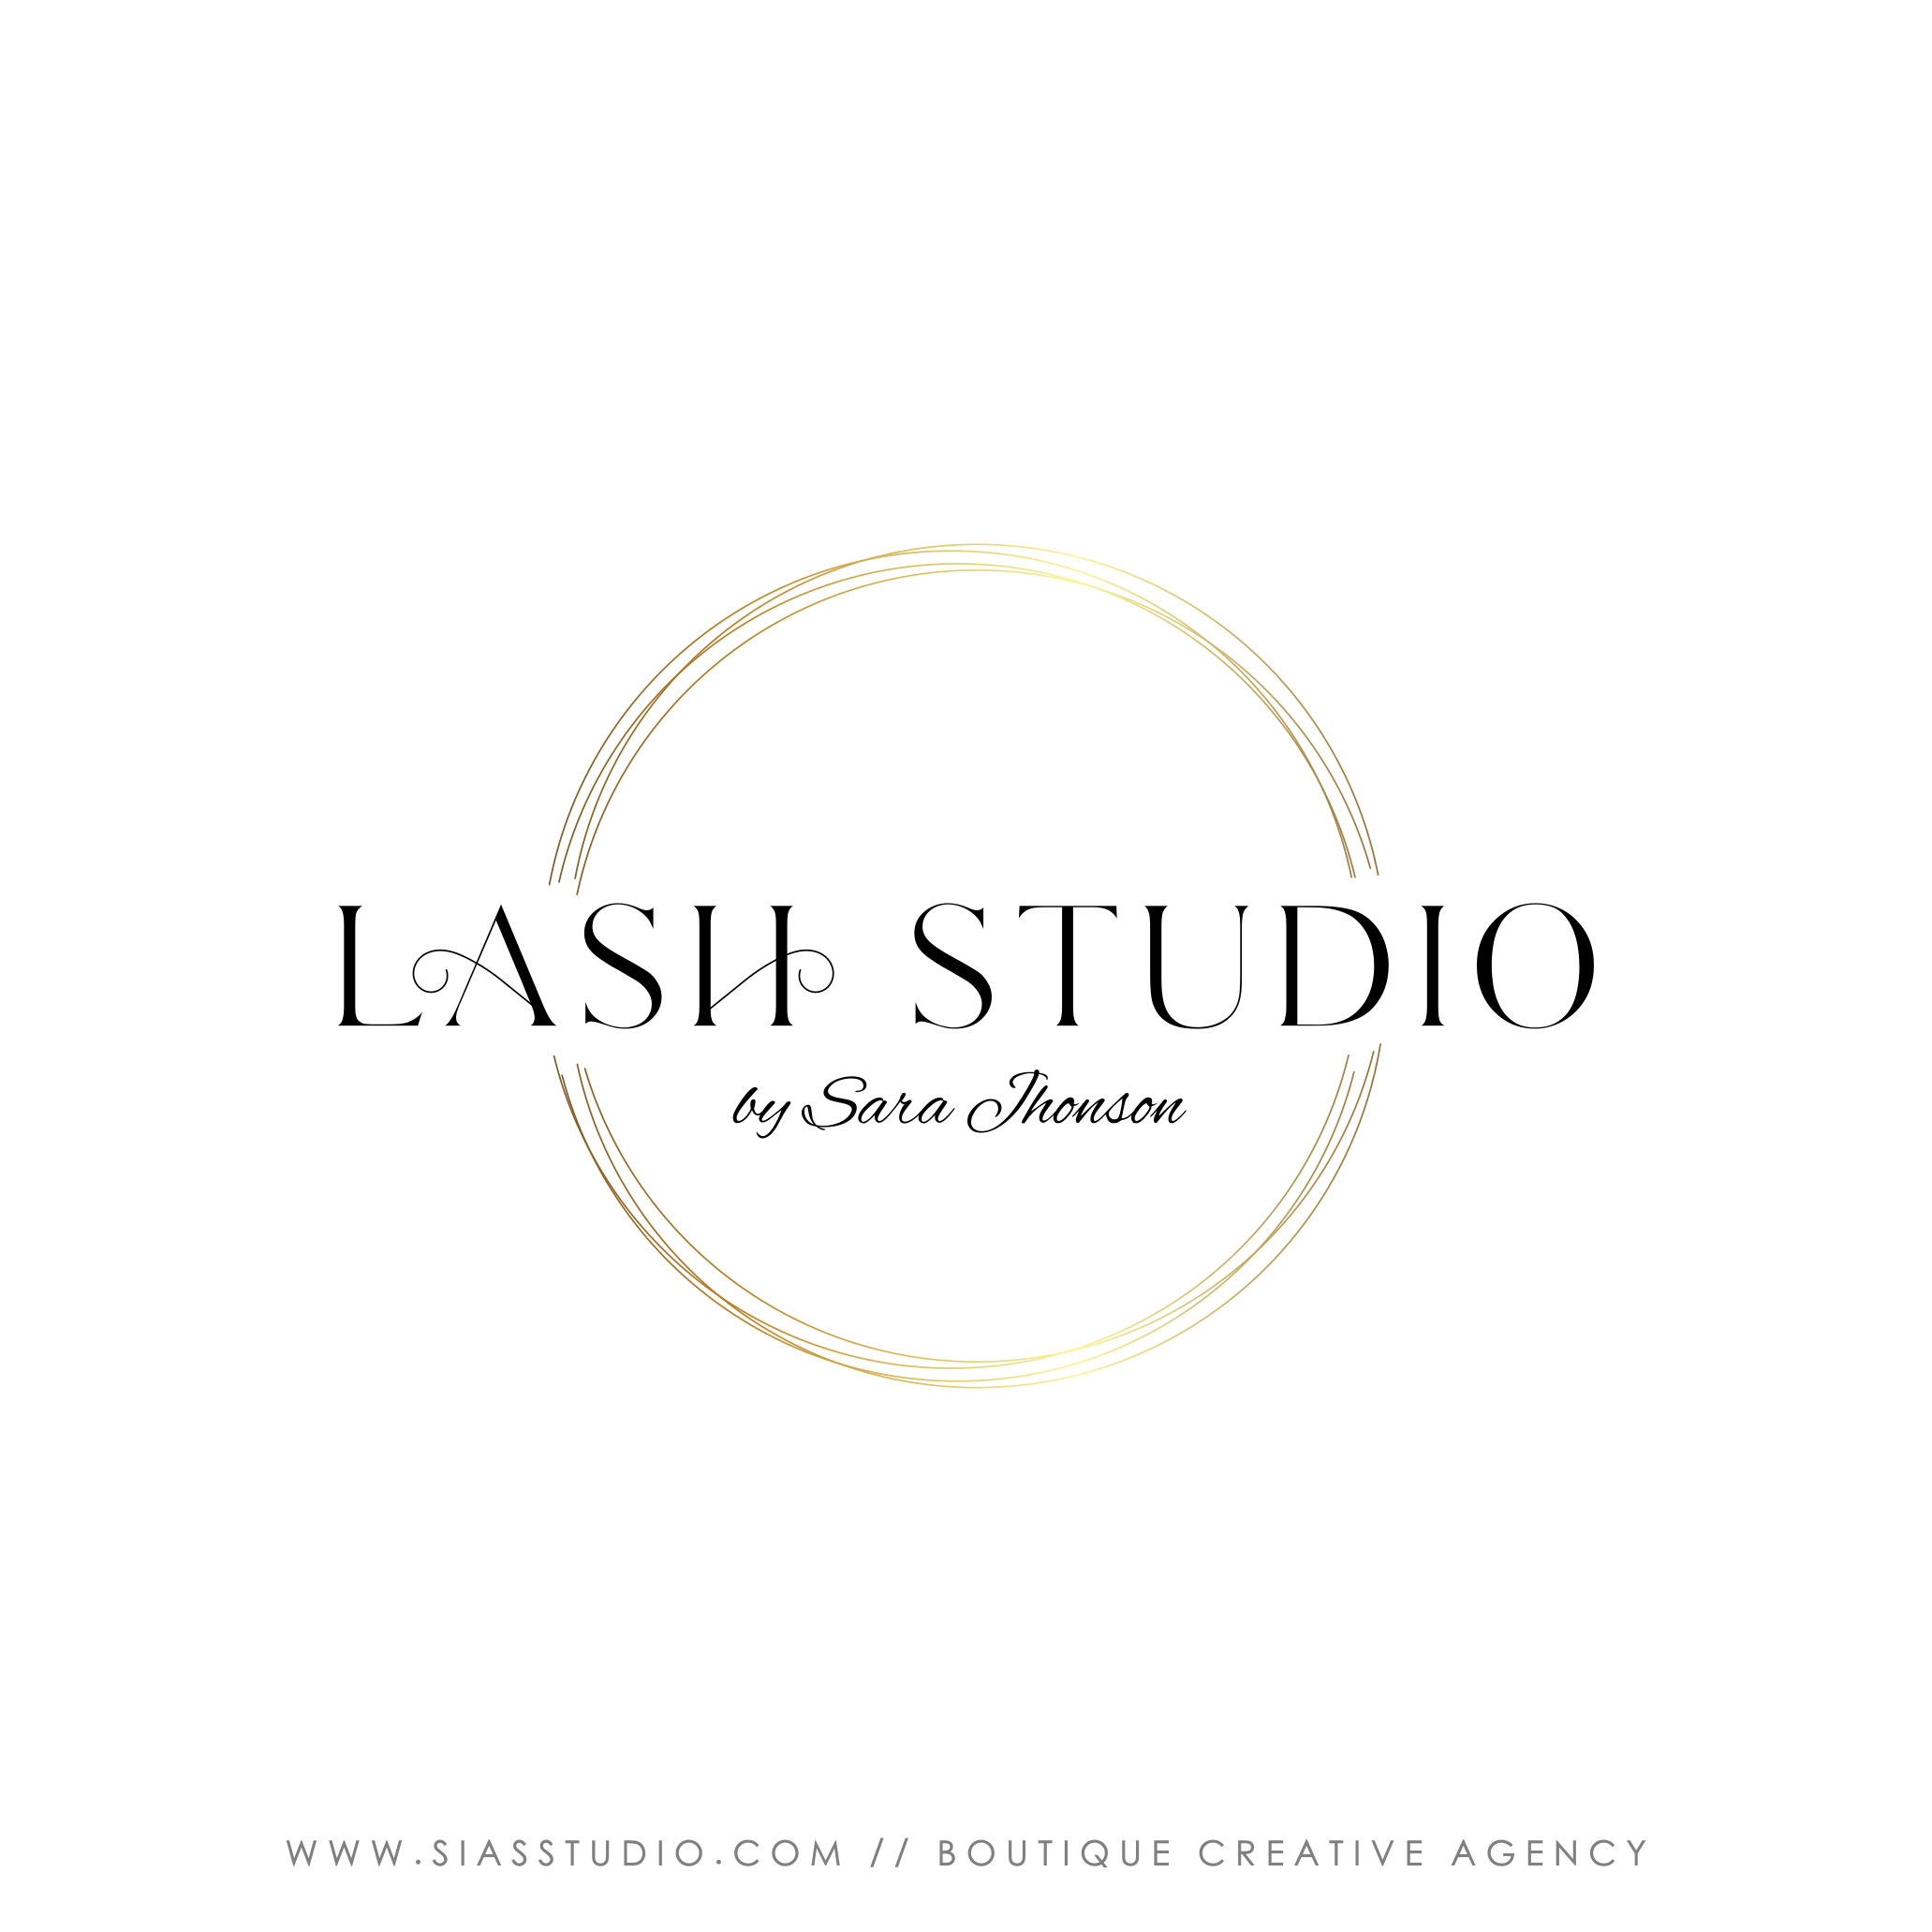 Lash Studio - Logo design • Design your logo with me! - Sias Studio